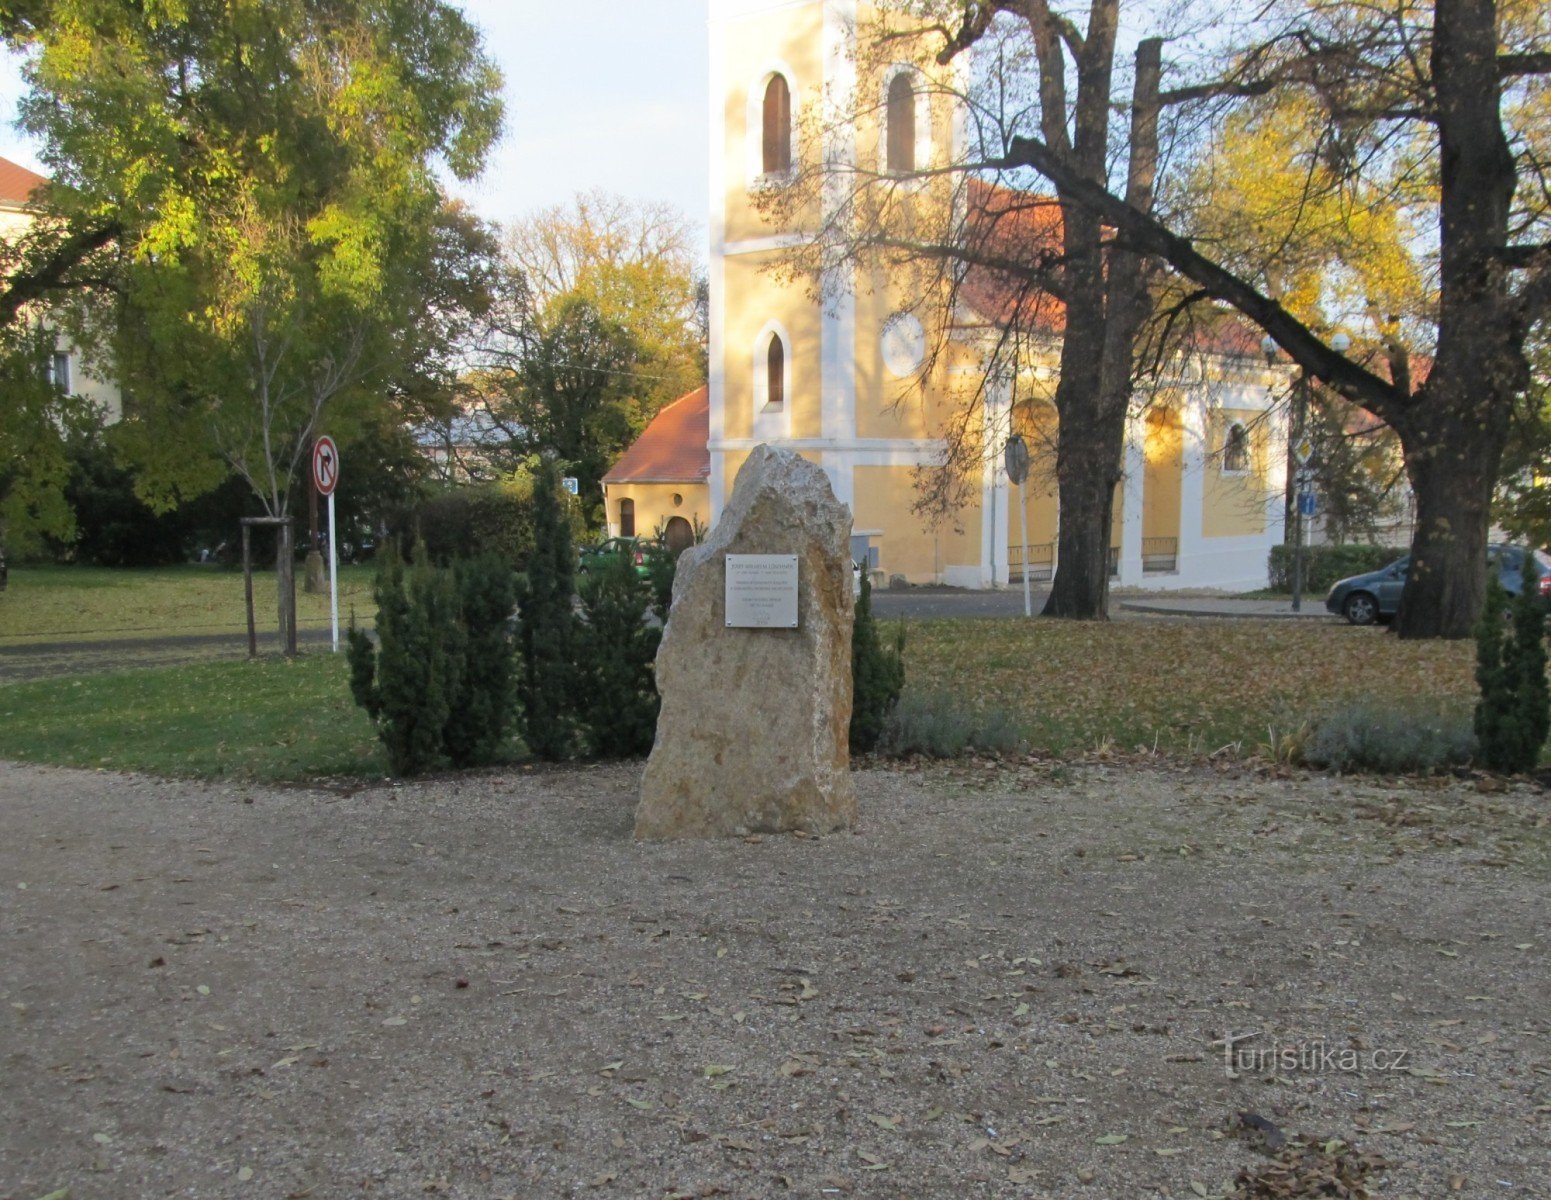 Monument to Josef von Löschner in Kadani